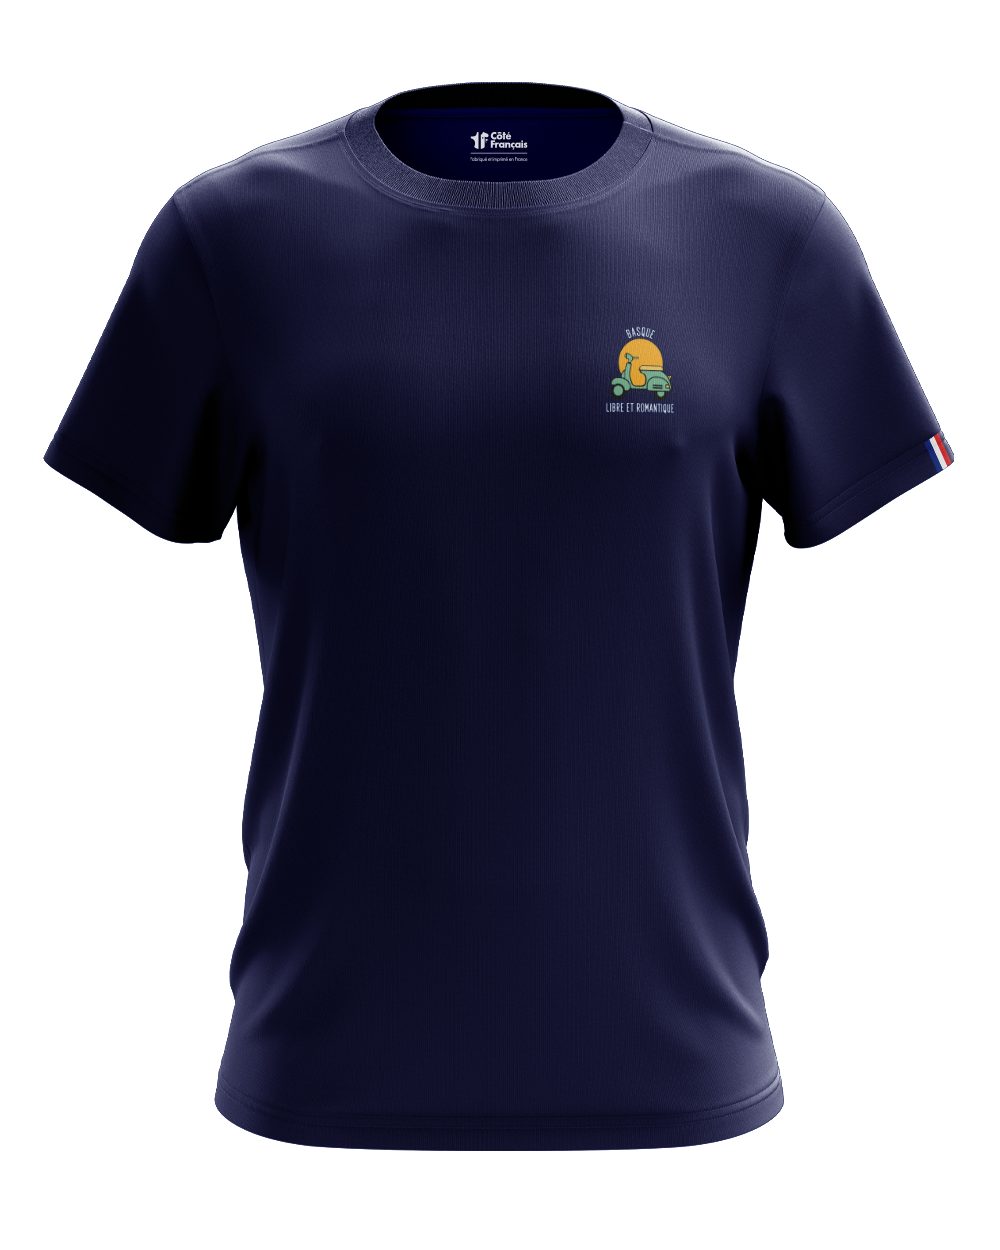 T-shirt "Basque libre et romantique" - bleu marine